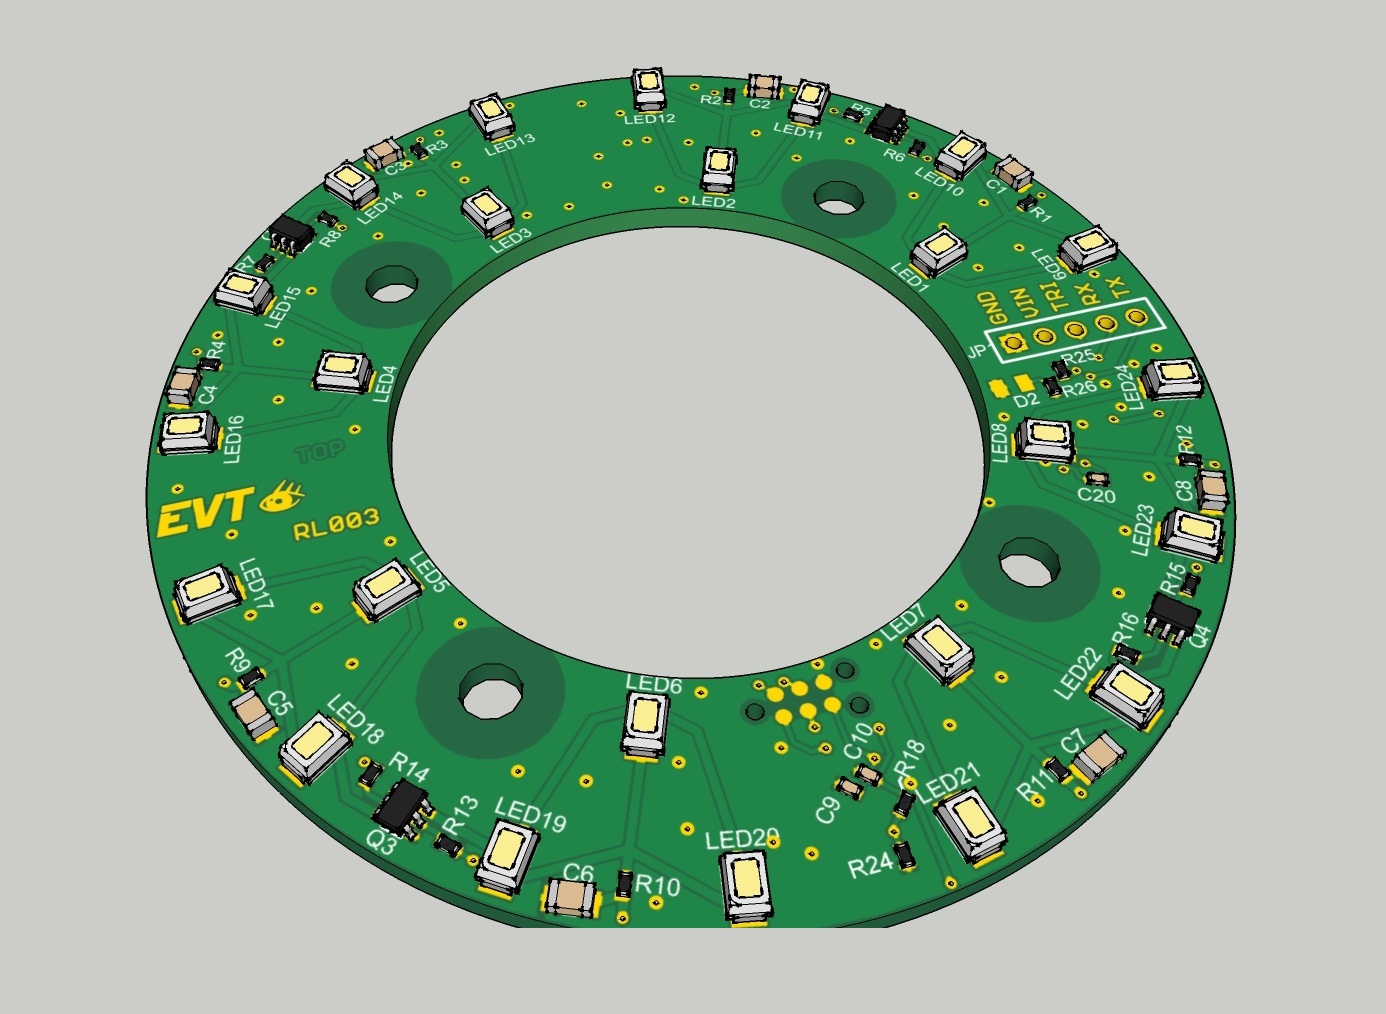 Ringlicht-v3 - Frei konfigurierbares Ringlicht mit RS232 Anbindung Kurzbeschreibung Das frei konfigurierbare Ringlicht kann jede beliebige Abfolge an Lichtmustern erzeugen und über einen